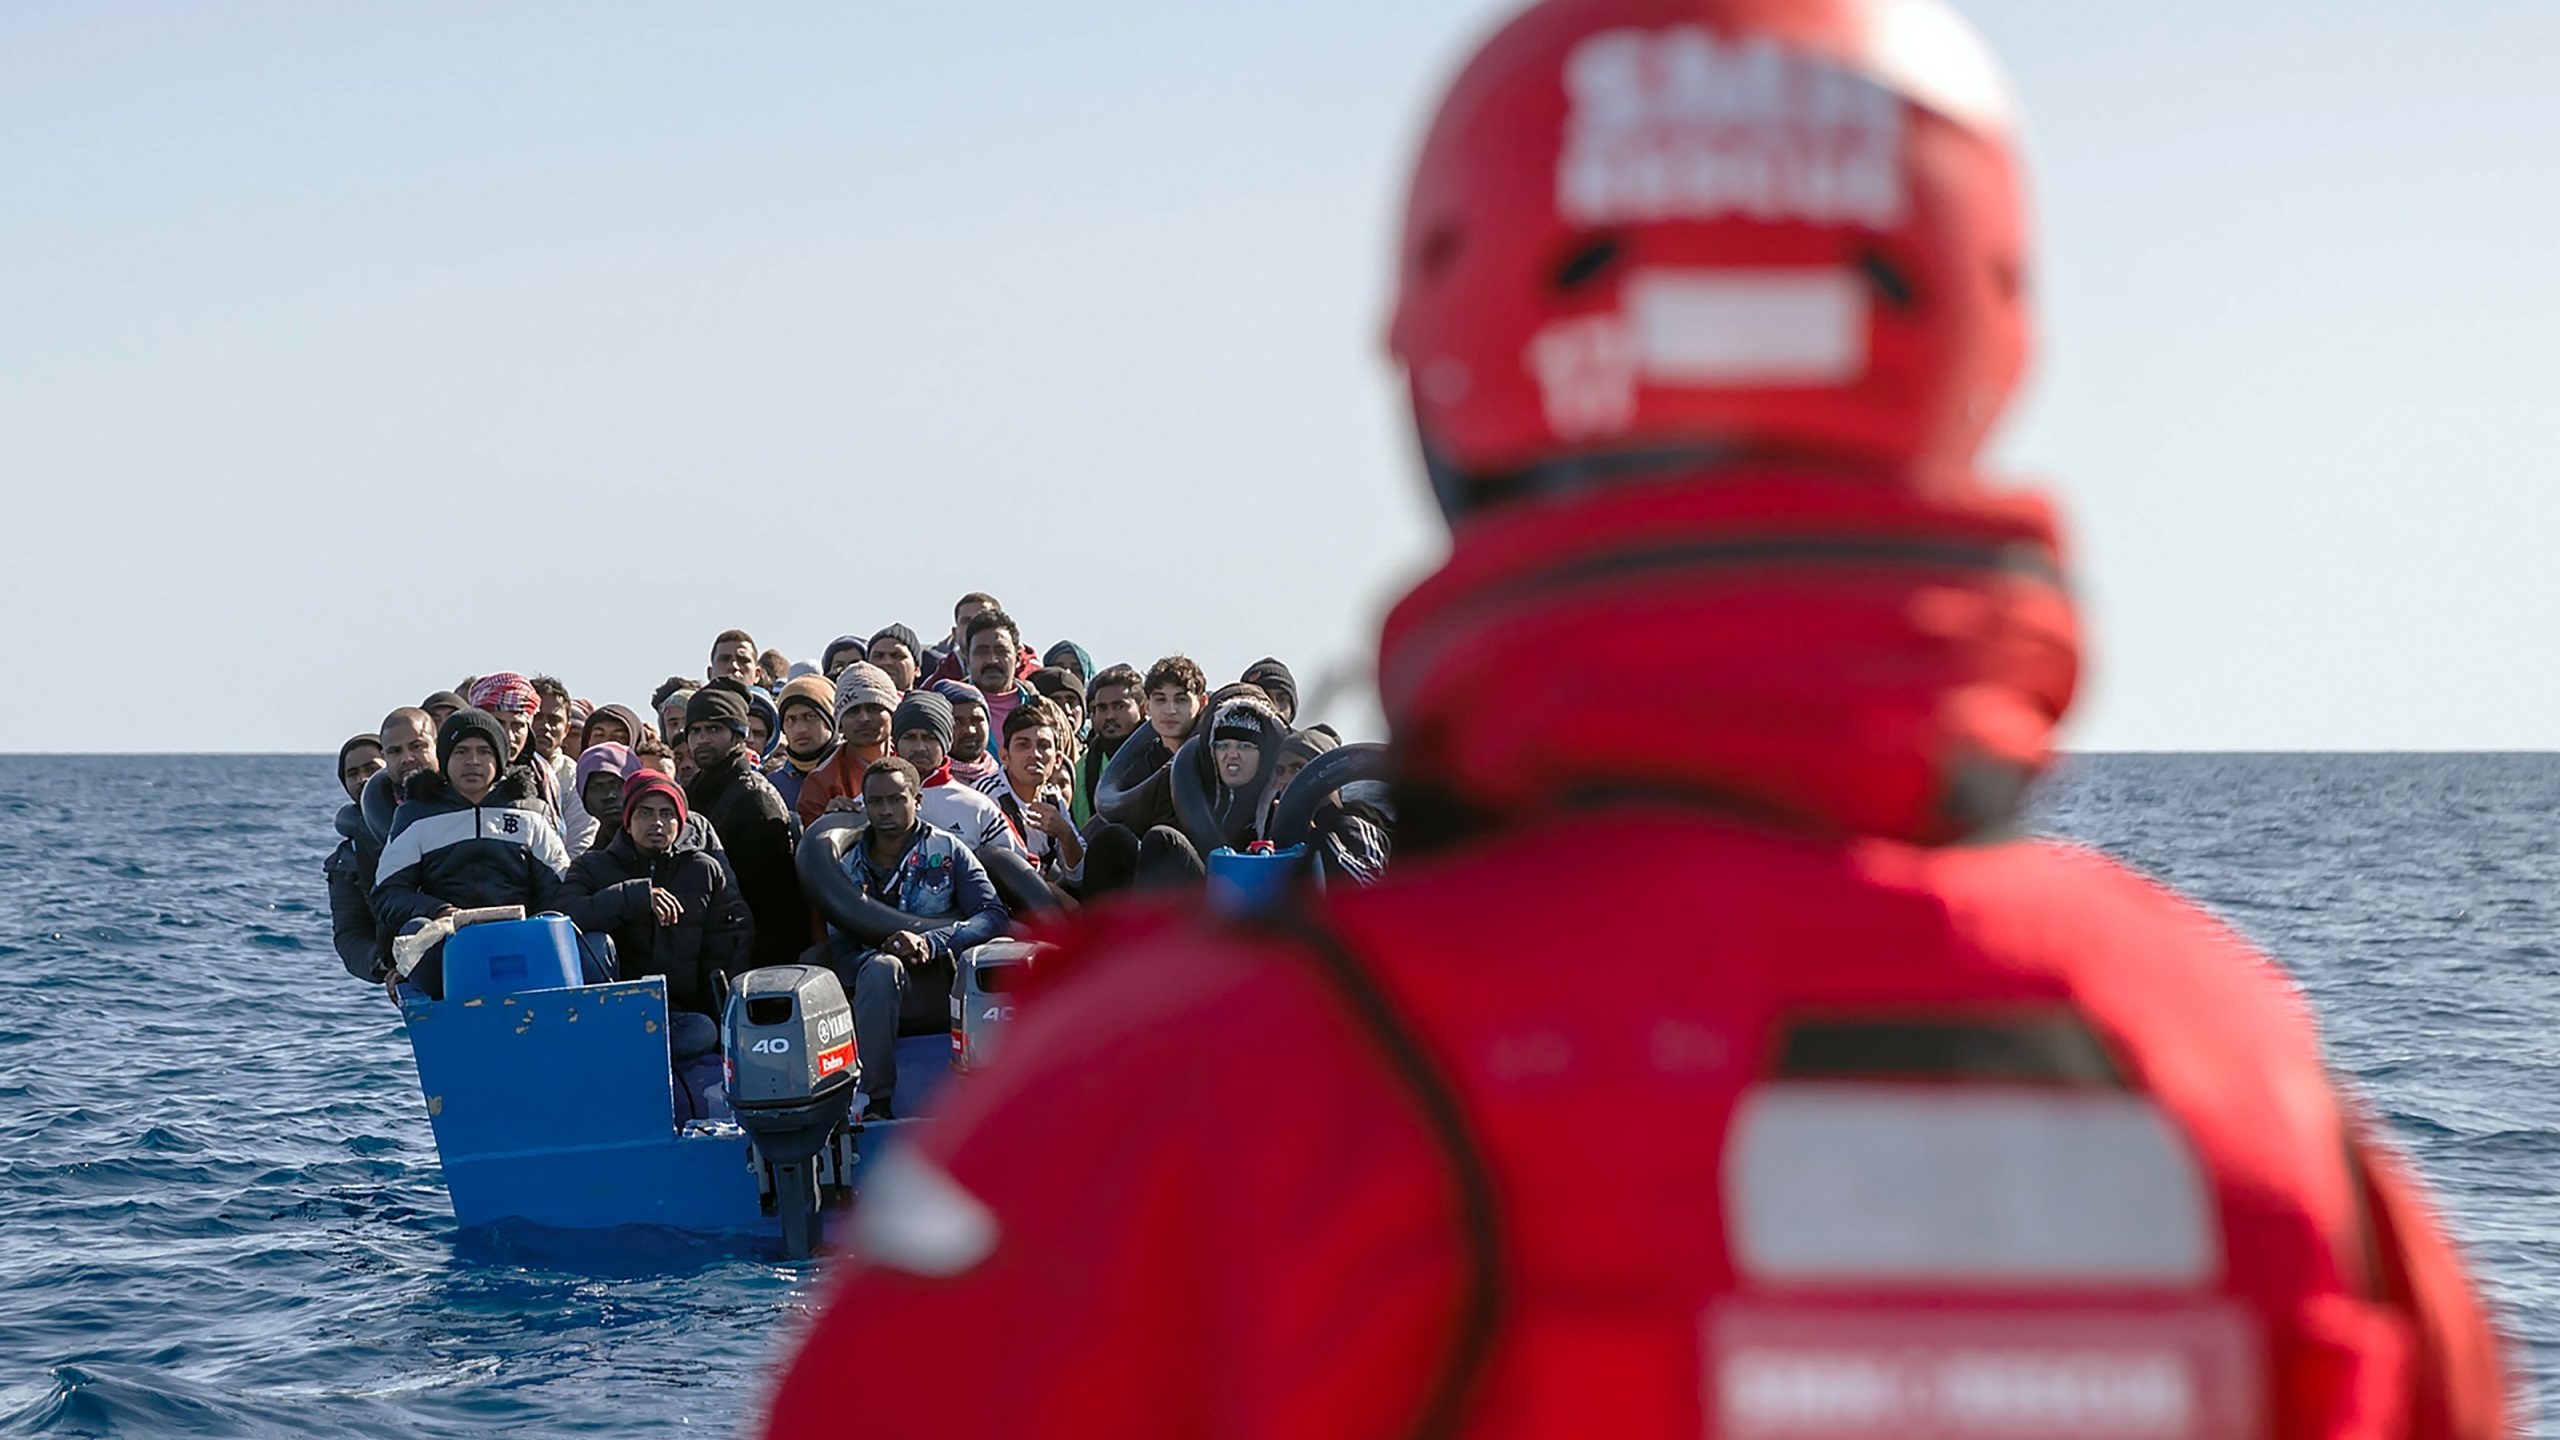 632 Migrants Rescued Off Libyan Coast in Past Week